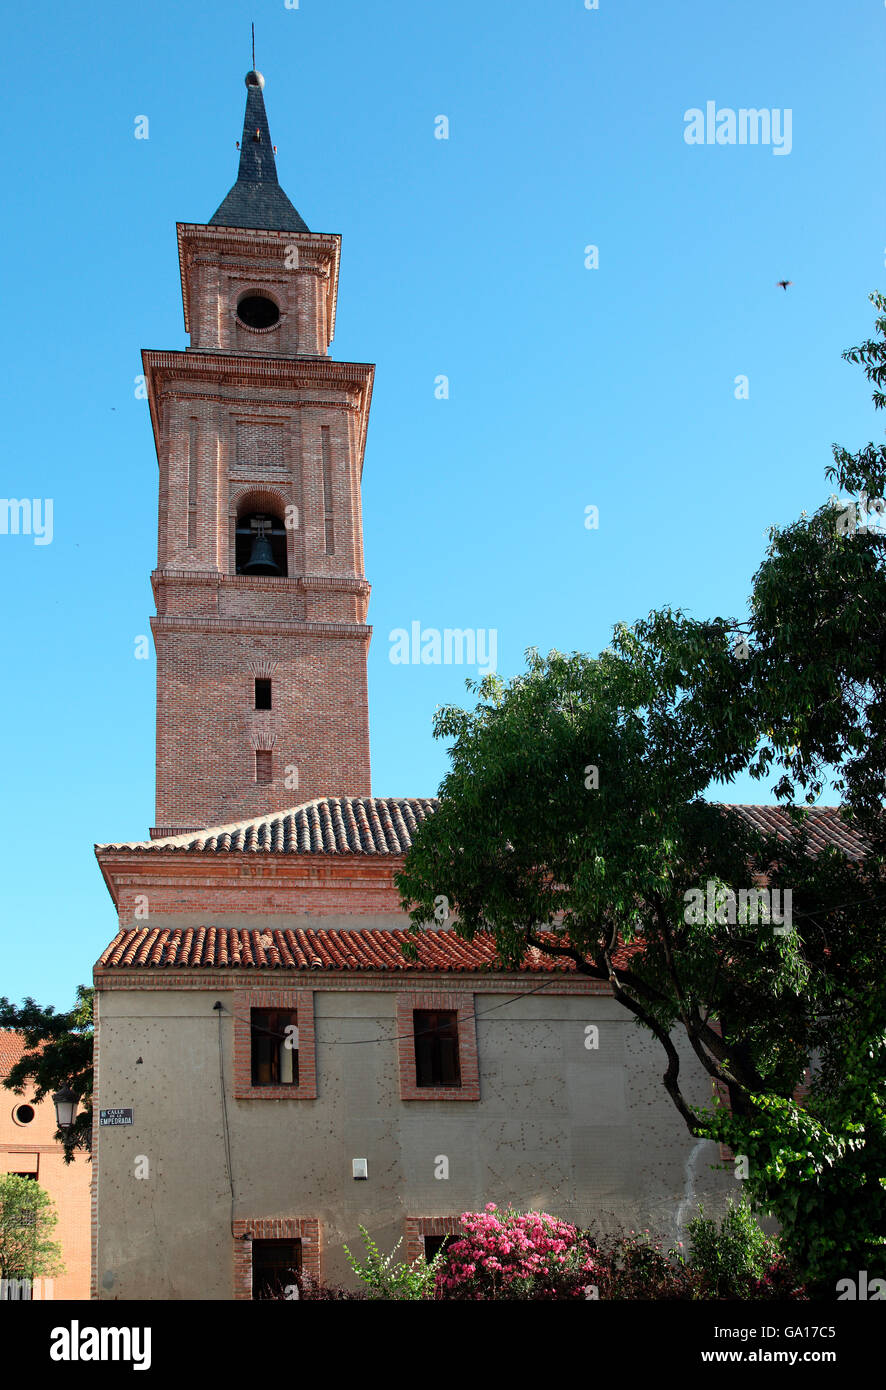 L'église construite en brique à Barajas, Espagne Banque D'Images